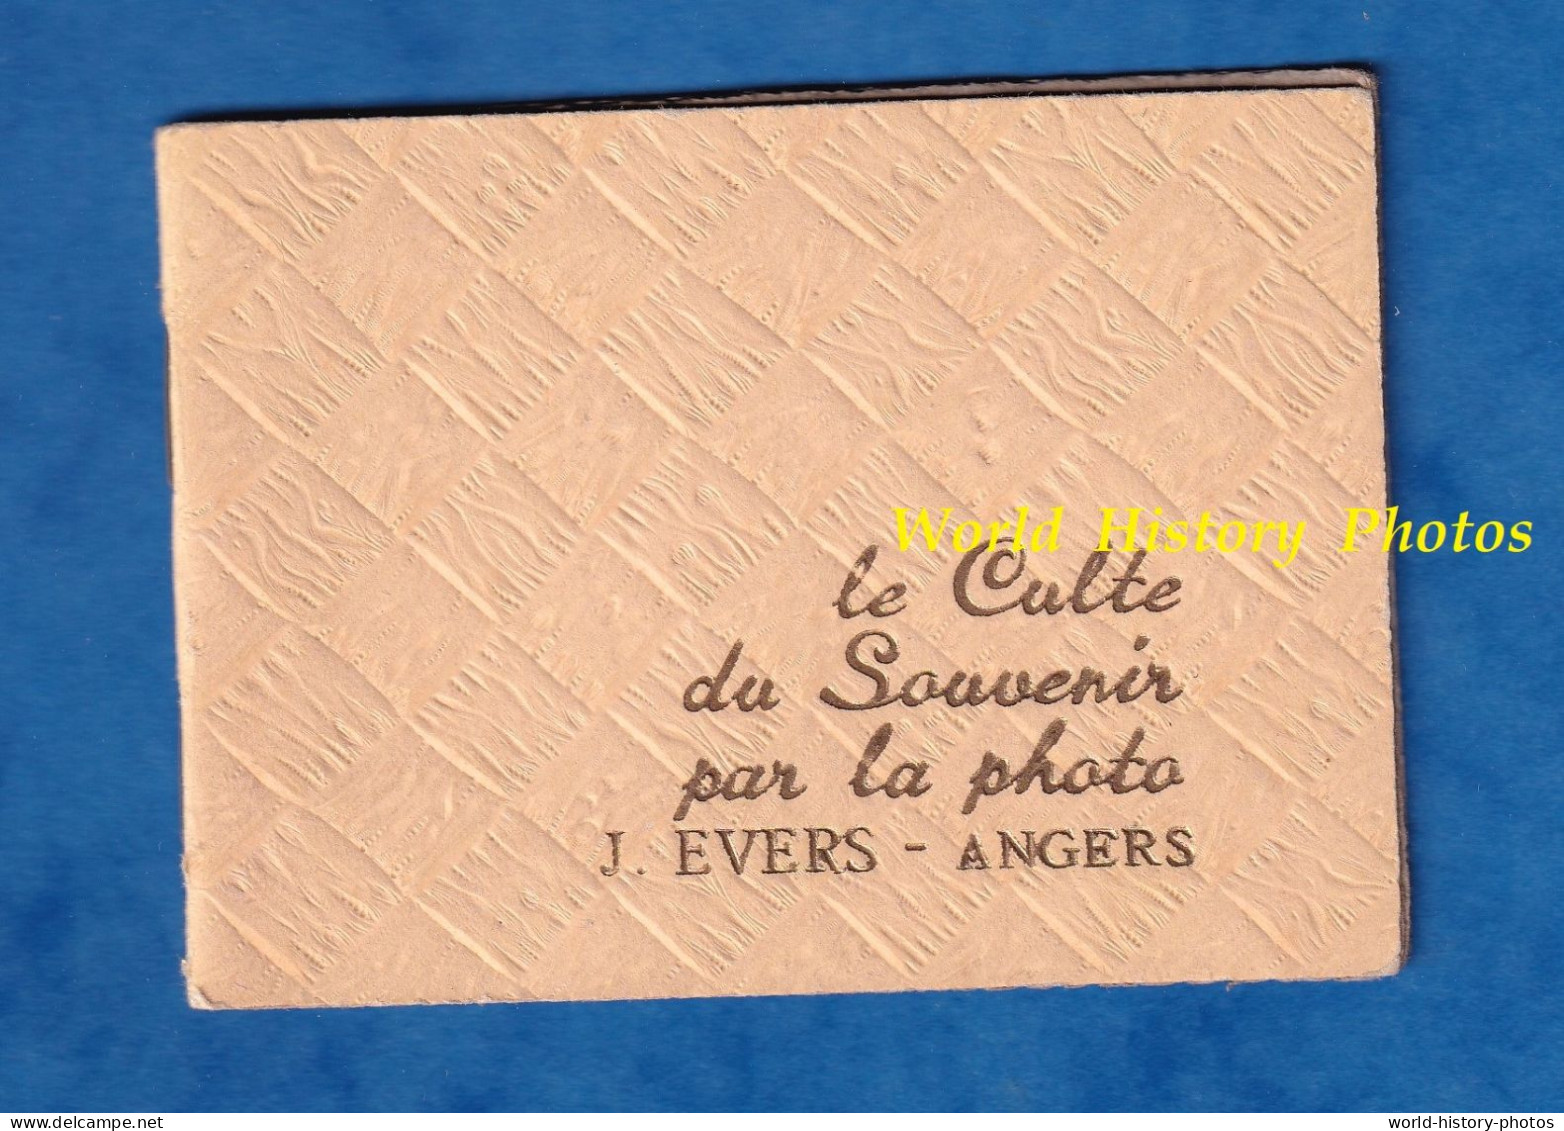 Petit Album Publicitaire Pour Photo - ANGERS - J. EVERS Photographe - Vers 1935 1950 - Le Culte Du Souvenir Par La - Material Y Accesorios